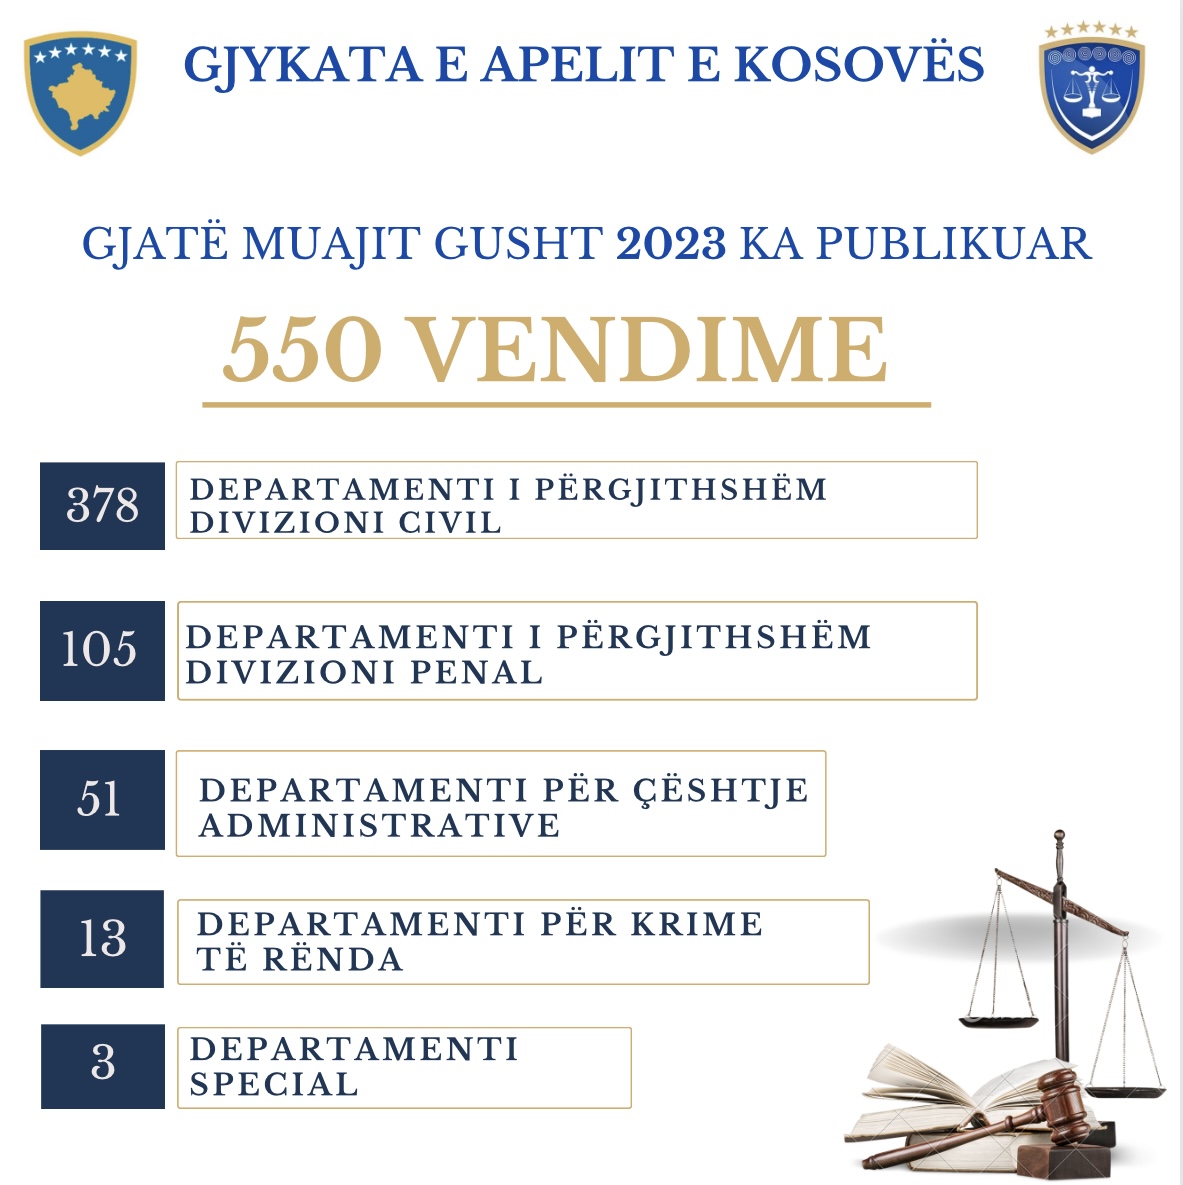 Gjykata e Apelit e Kosovës gjatë muajit Gusht ka publikuar 550 vendime